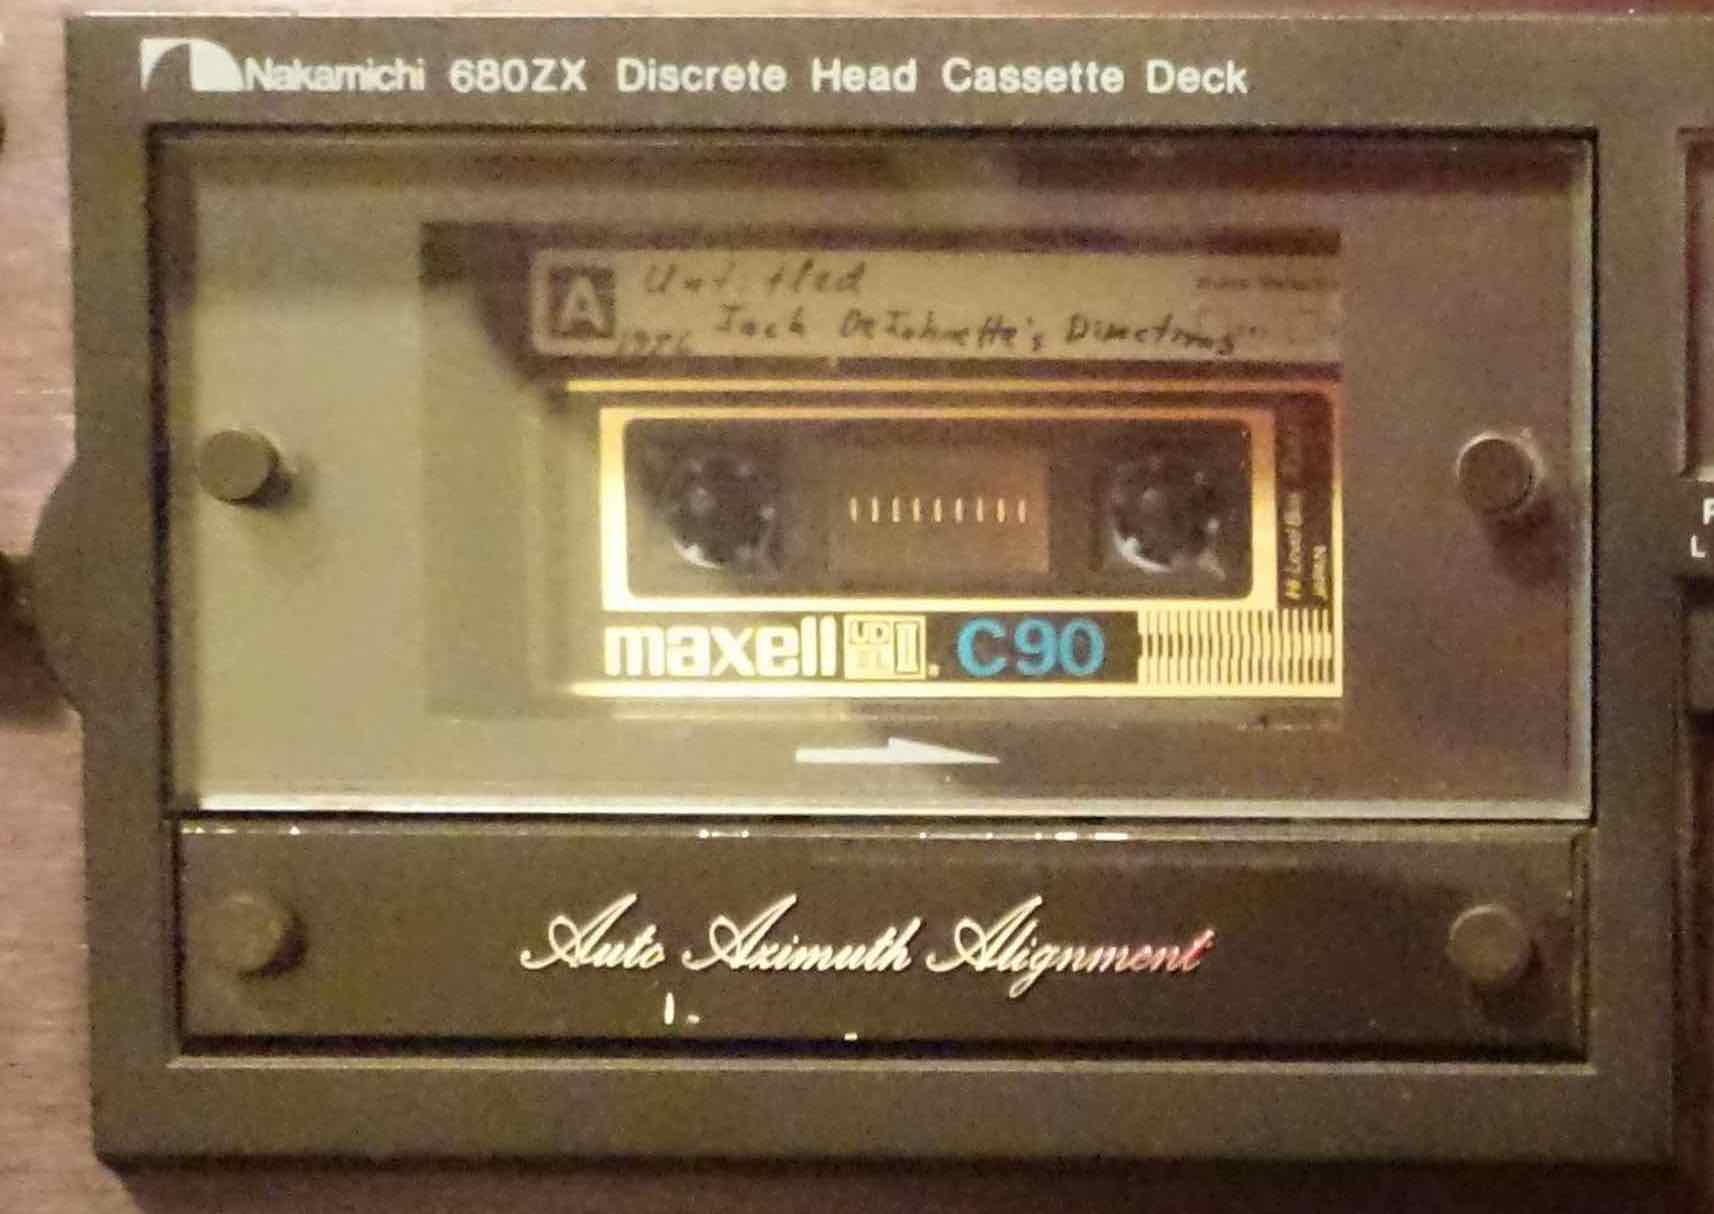 cassette in Nak 680.jpeg